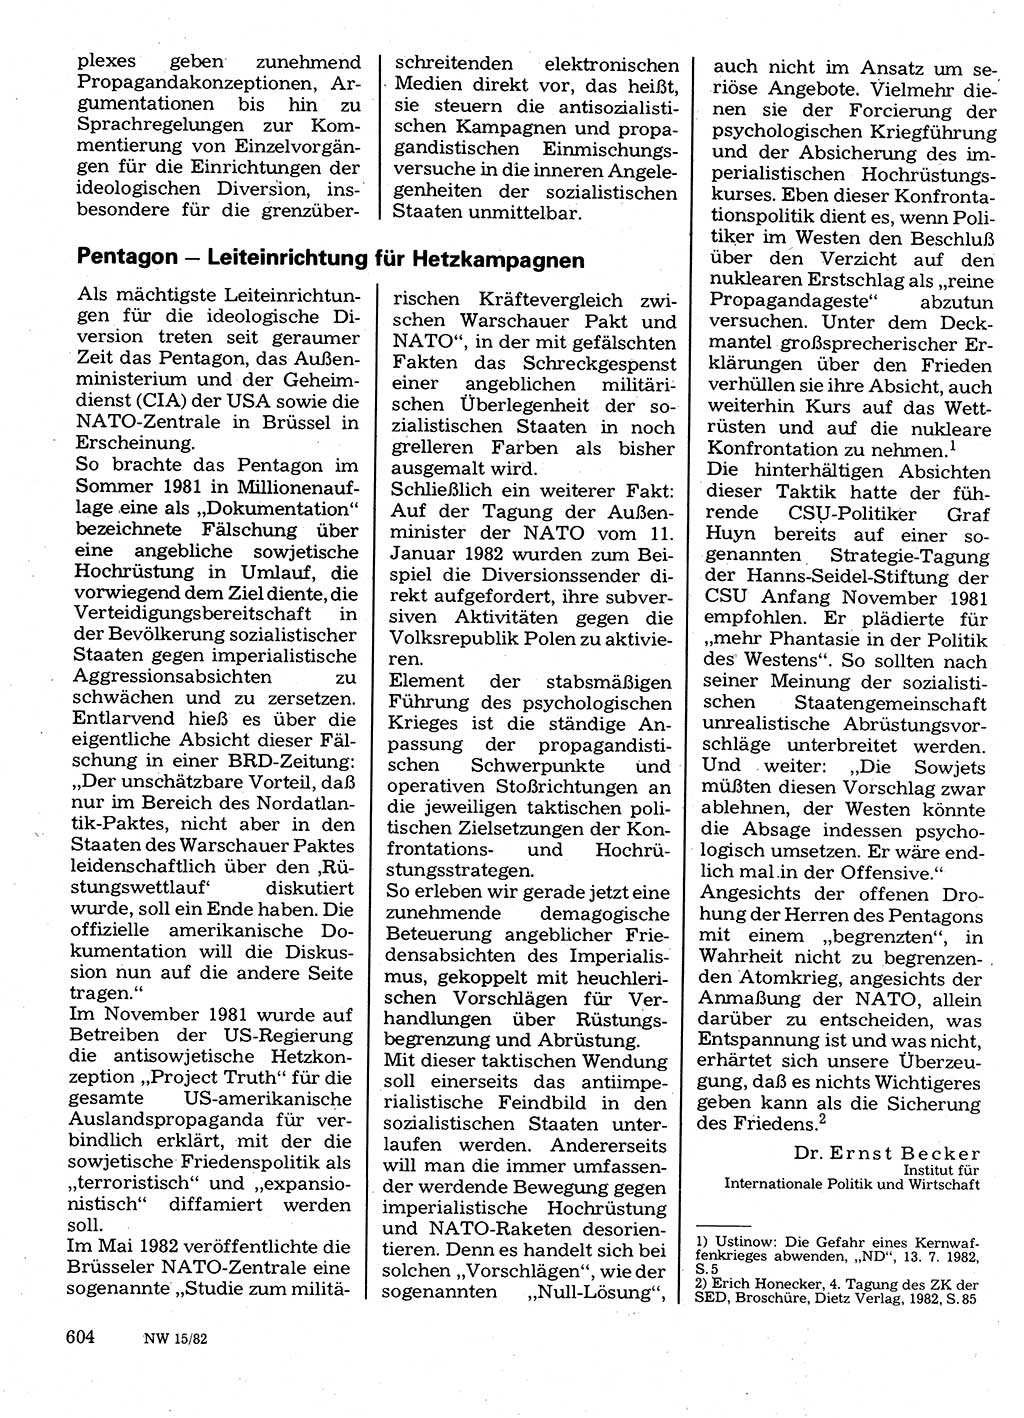 Neuer Weg (NW), Organ des Zentralkomitees (ZK) der SED (Sozialistische Einheitspartei Deutschlands) für Fragen des Parteilebens, 37. Jahrgang [Deutsche Demokratische Republik (DDR)] 1982, Seite 604 (NW ZK SED DDR 1982, S. 604)